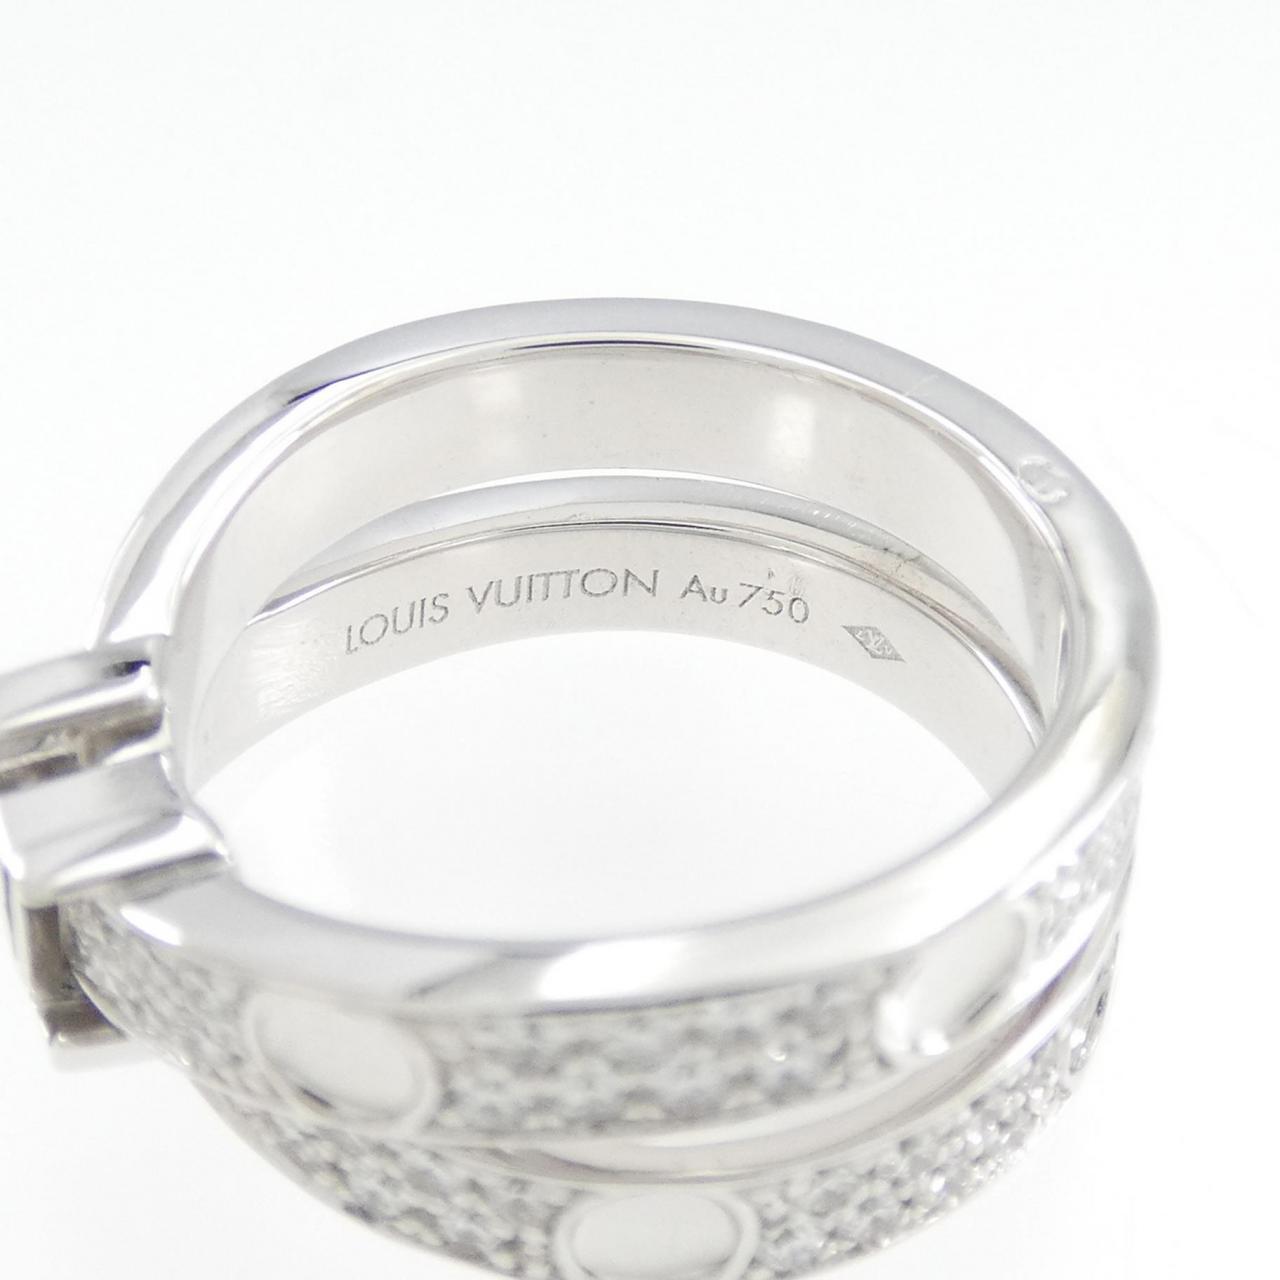 Authentic Louis Vuitton Petite Berg Empreinte Ring #260-006-315-2630